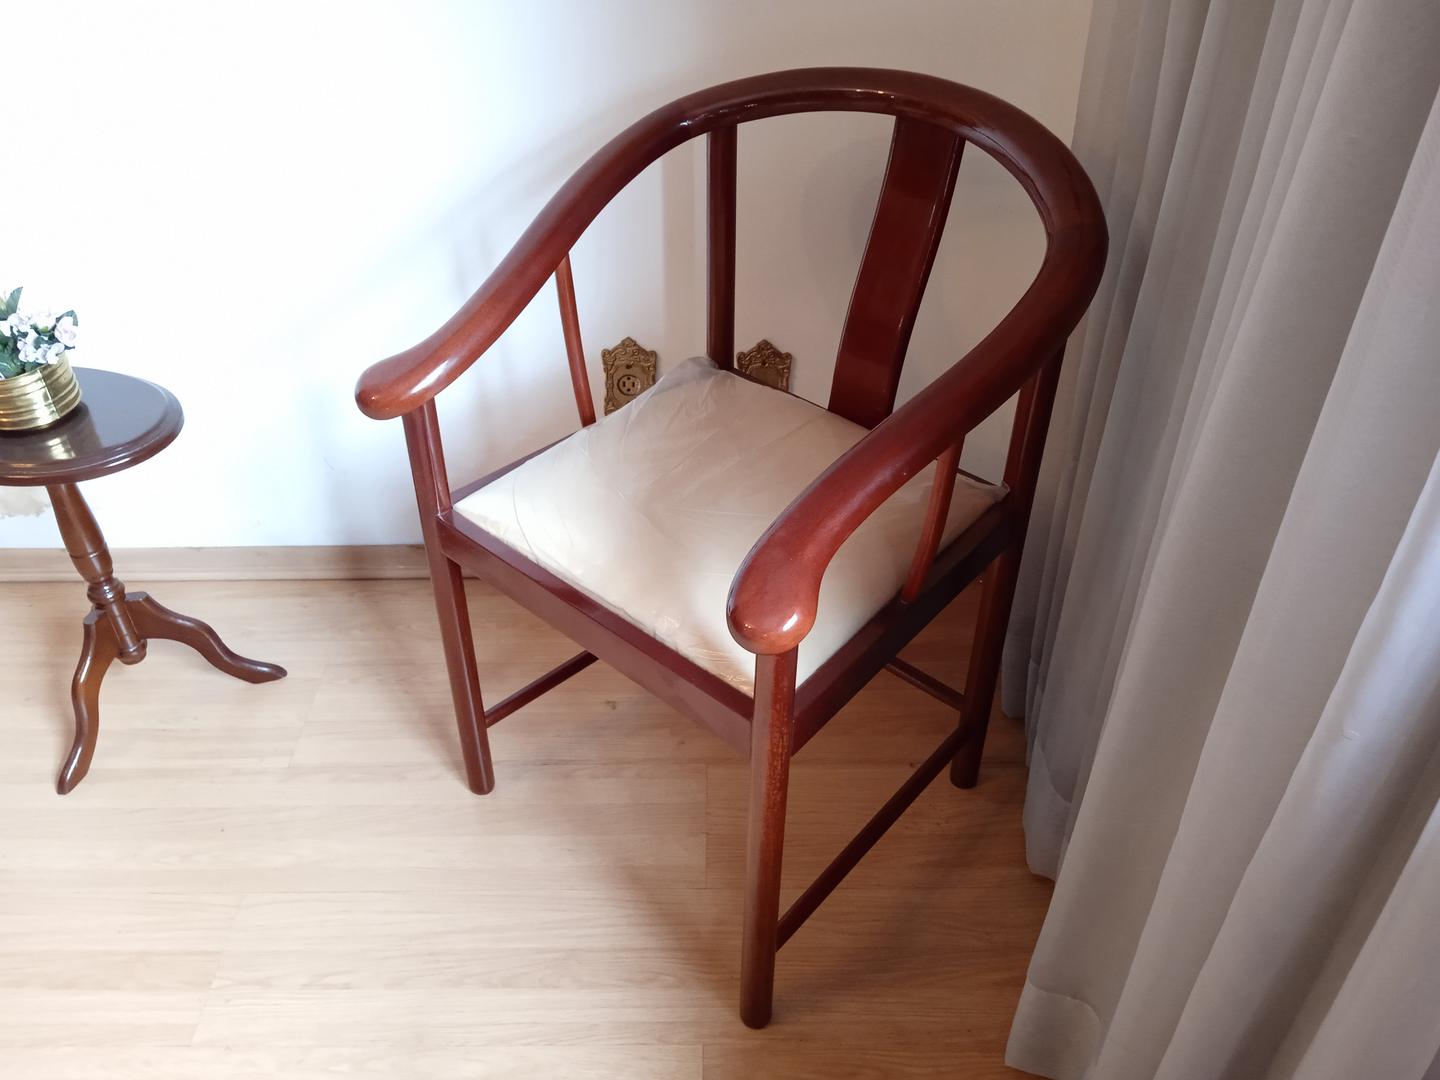 Cadeira fixa estofada c/ braços em Madeira / Estofado Marrom 80 cm x 60 cm x 60 cm